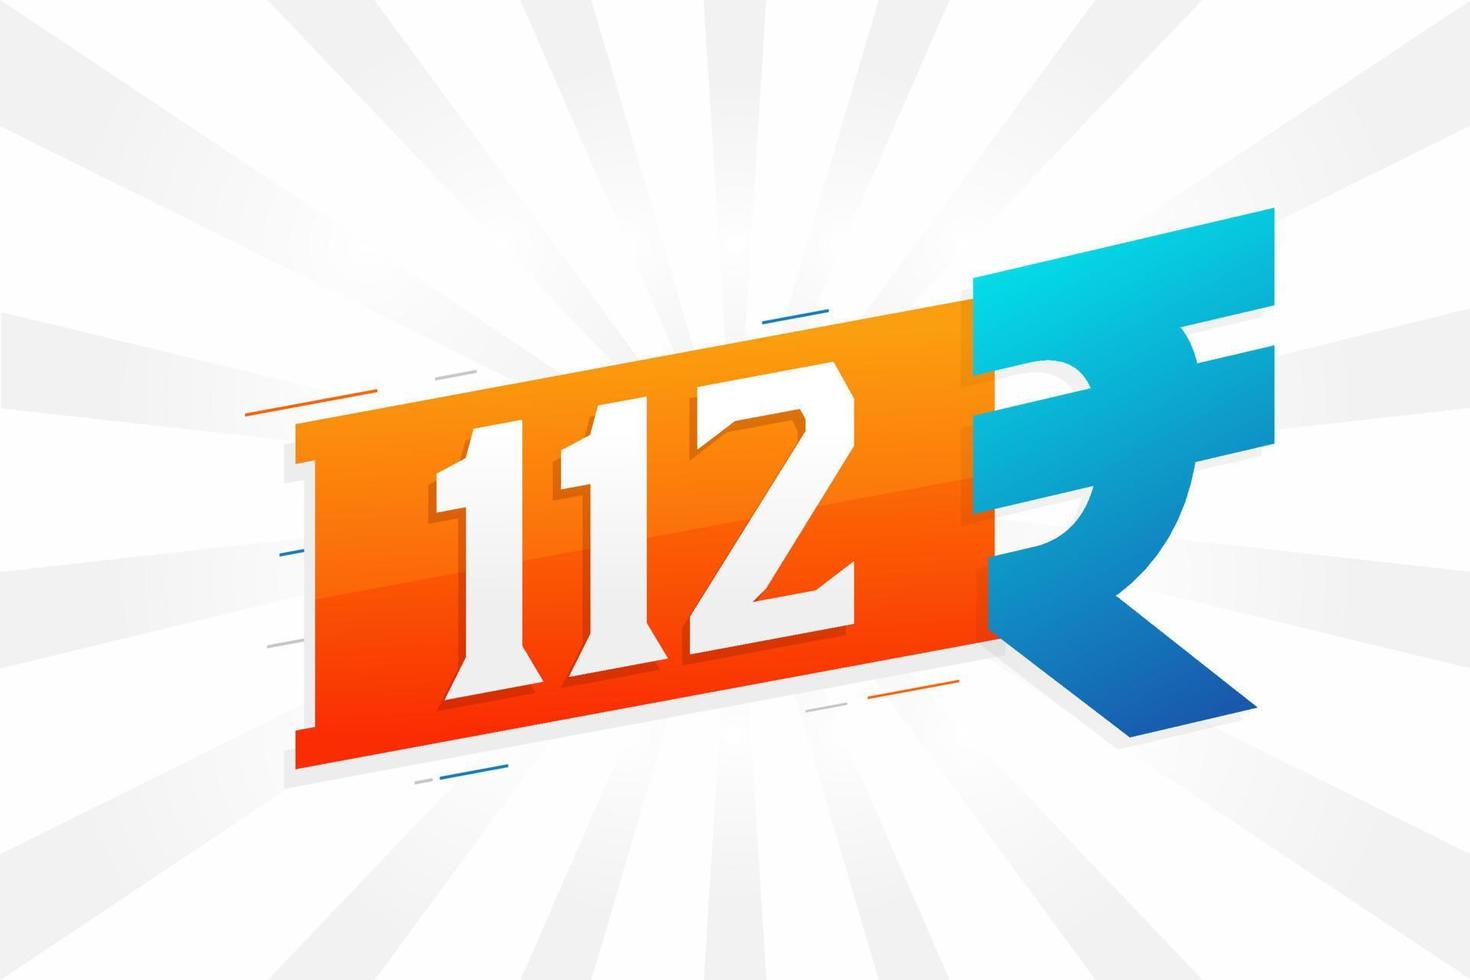 Imagem de vetor de texto em negrito símbolo 112 rupias. ilustração vetorial de sinal de moeda de 112 rupias indianas